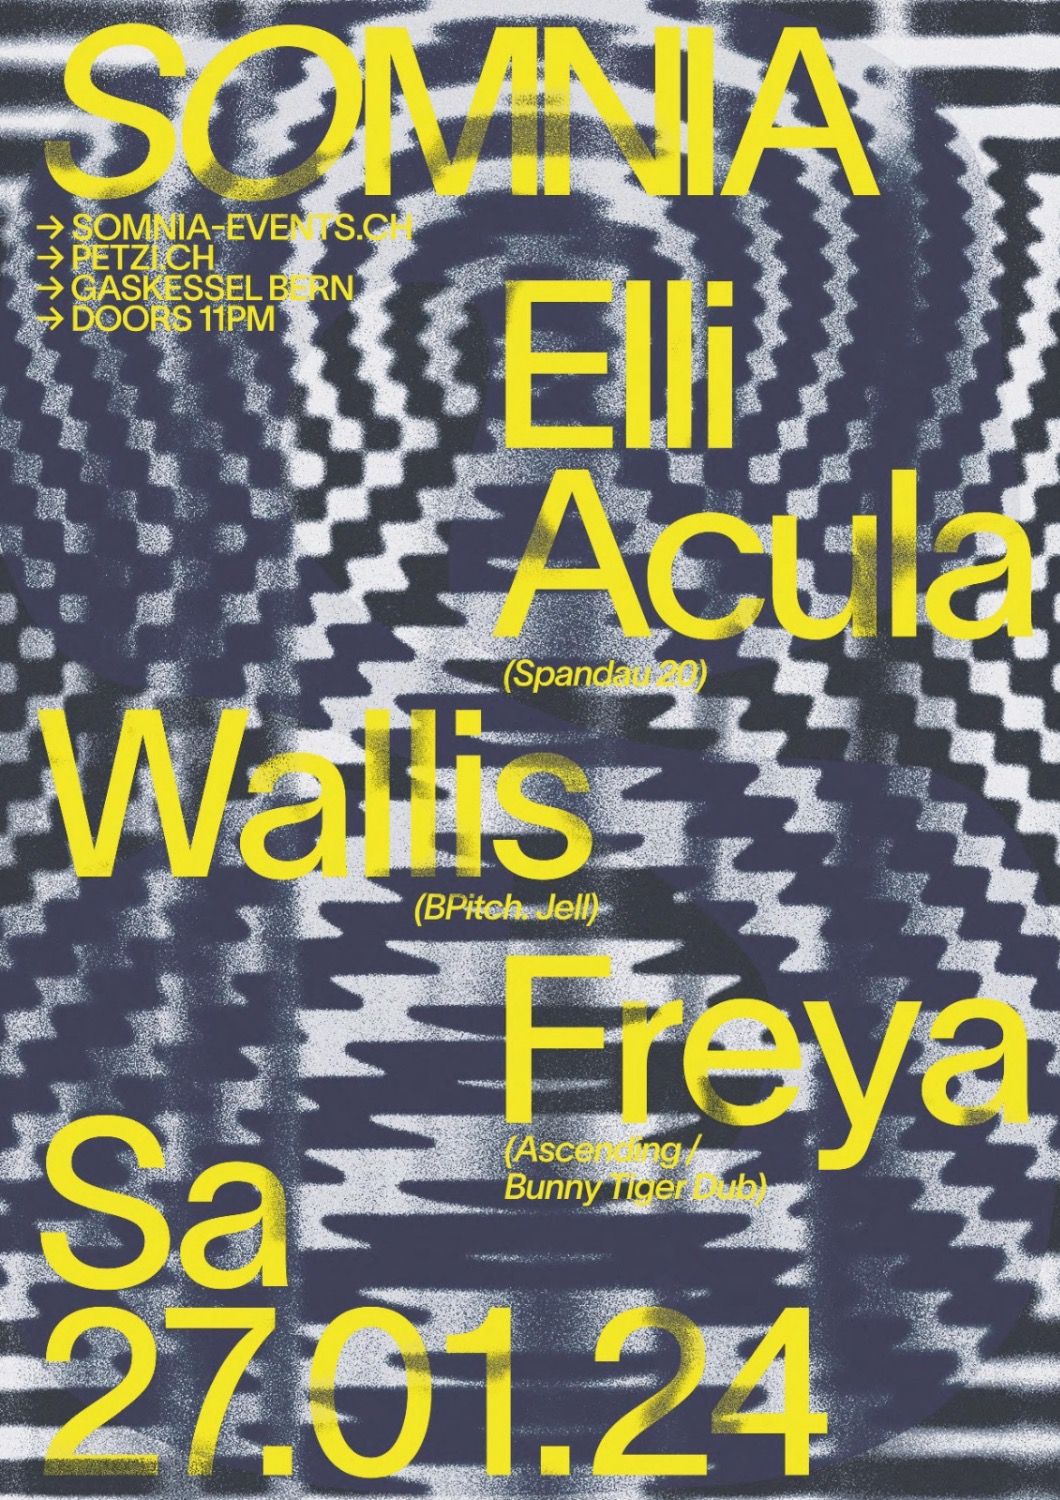 Poster für Somnia w/ Elli Acula, Wallis, Freya , gestaltet von Yema Salzmann 